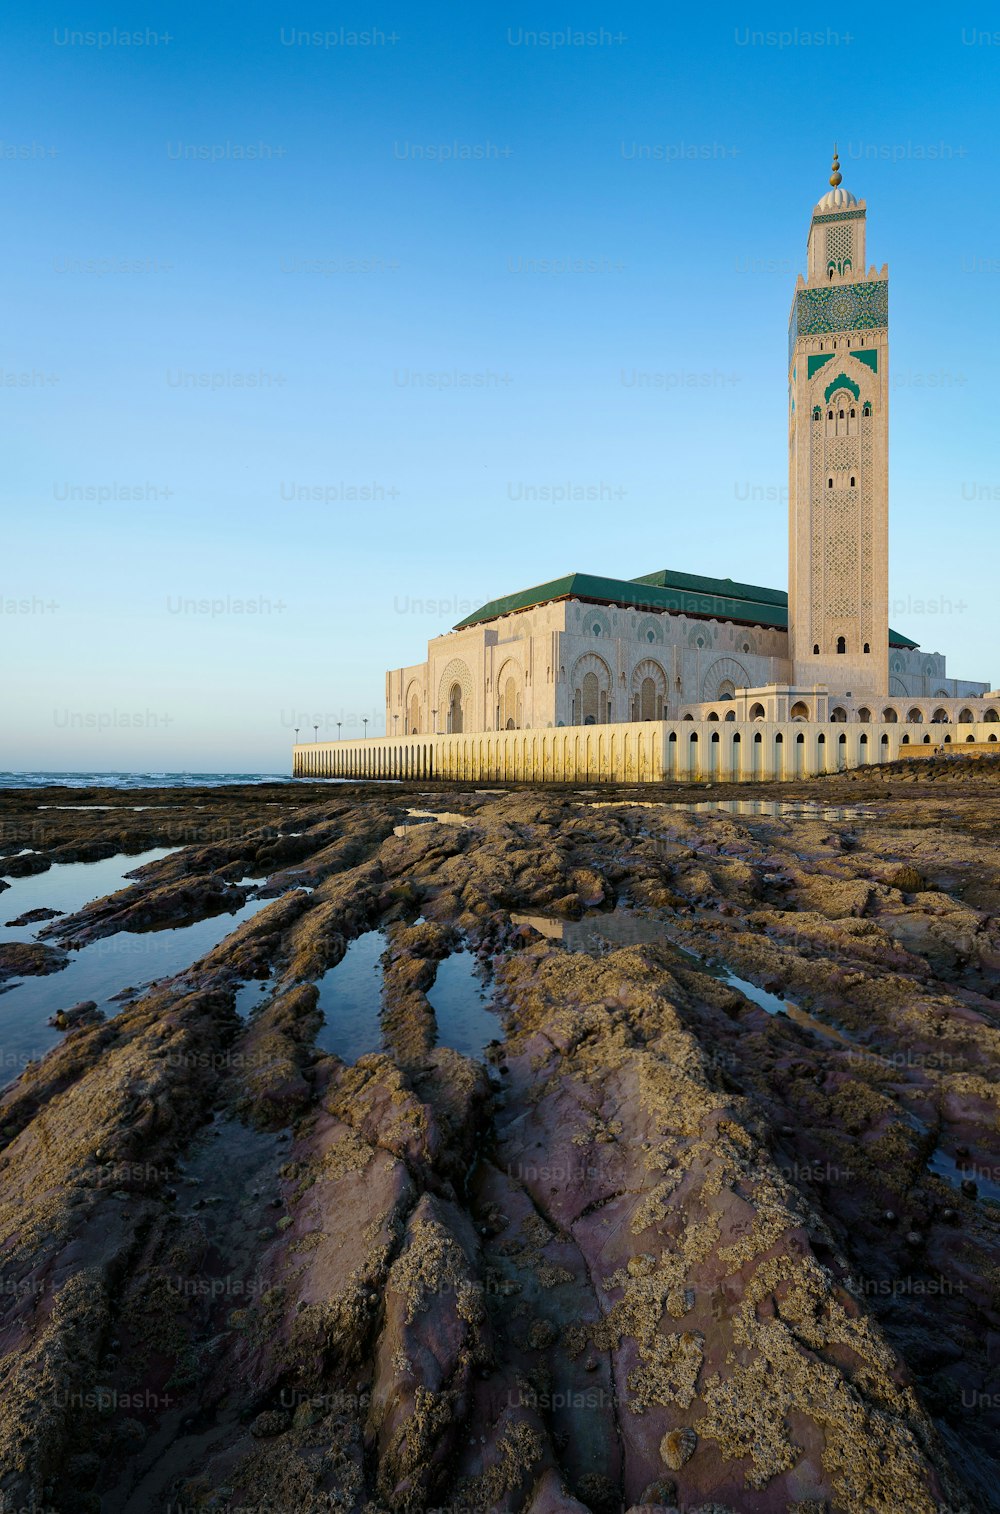 La bellissima moschea di Hassan II con rocce e acqua in primo piano a Casablanca, Marocco